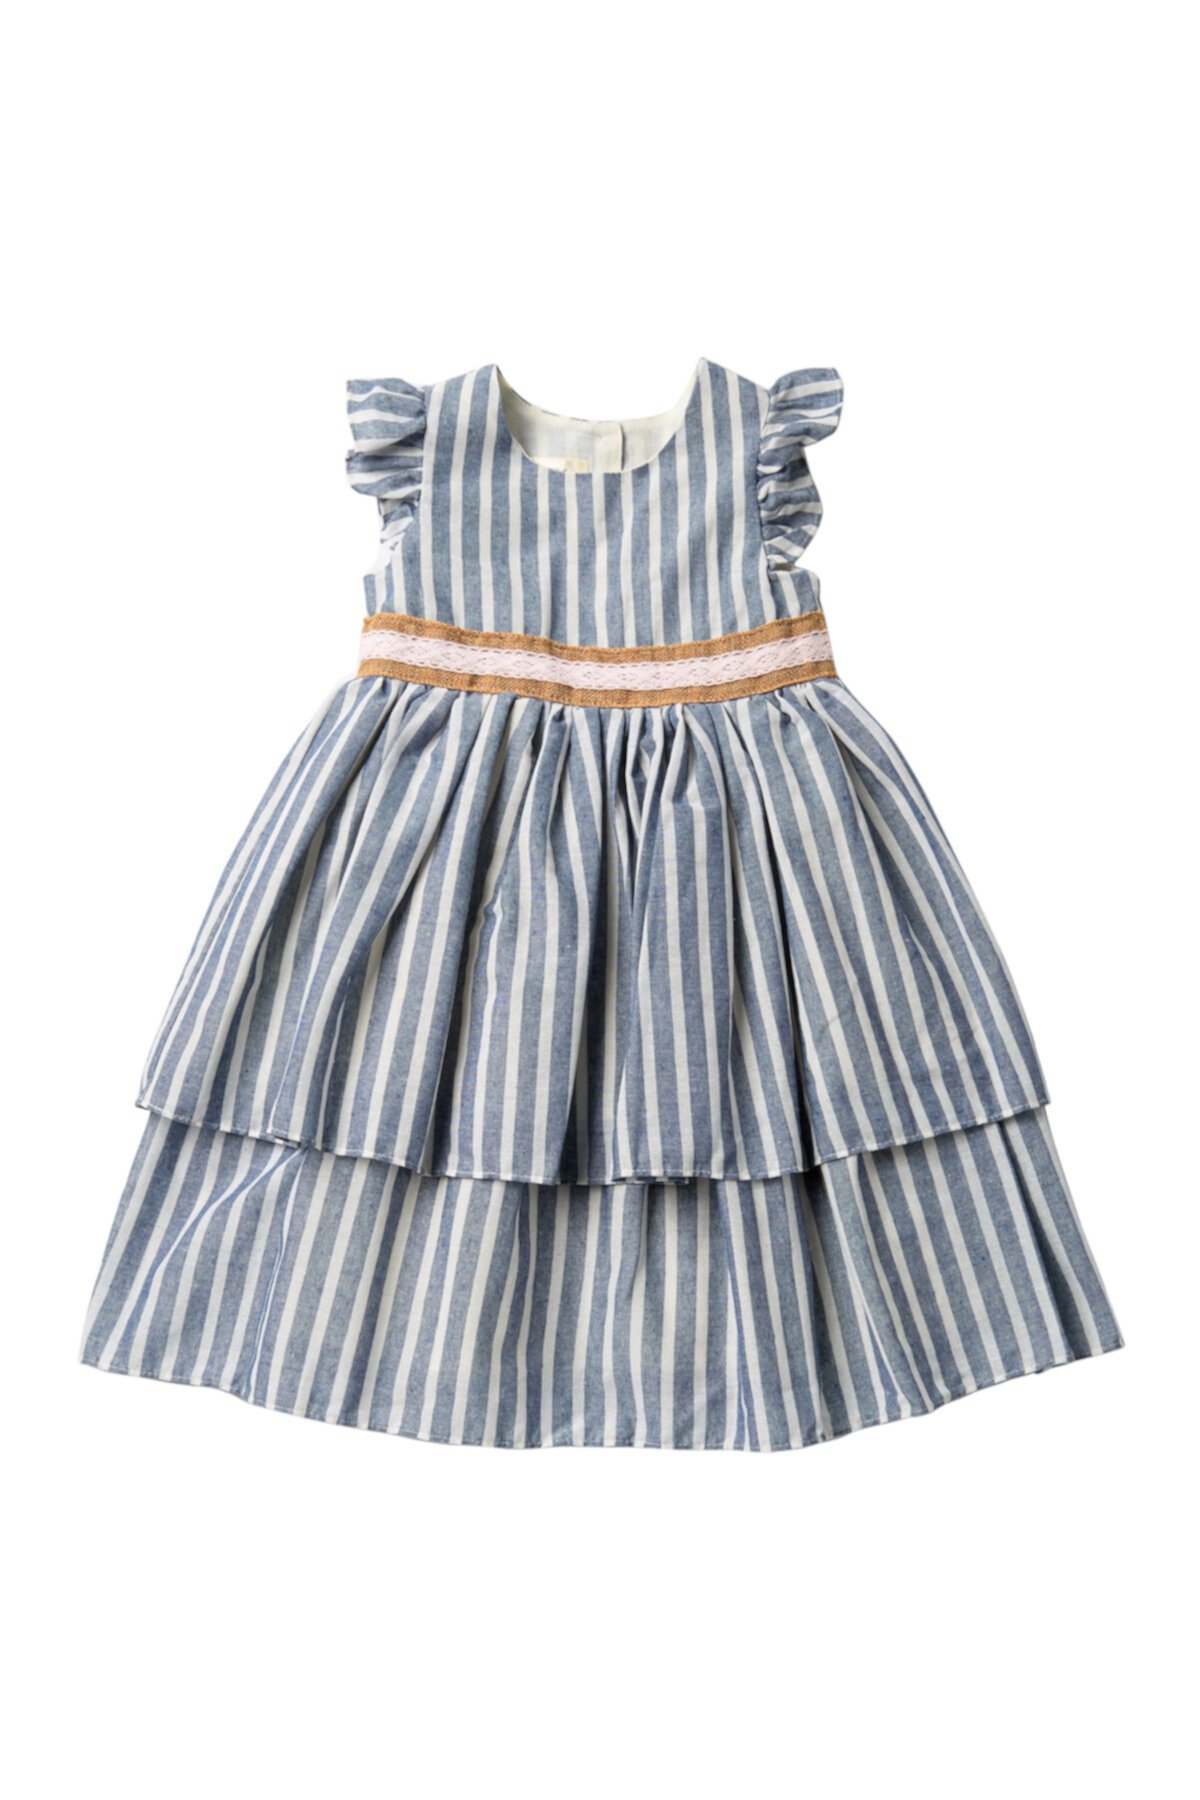 Многоярусное платье в полоску с рюшами (для малышей и маленьких девочек) Laura Ashley